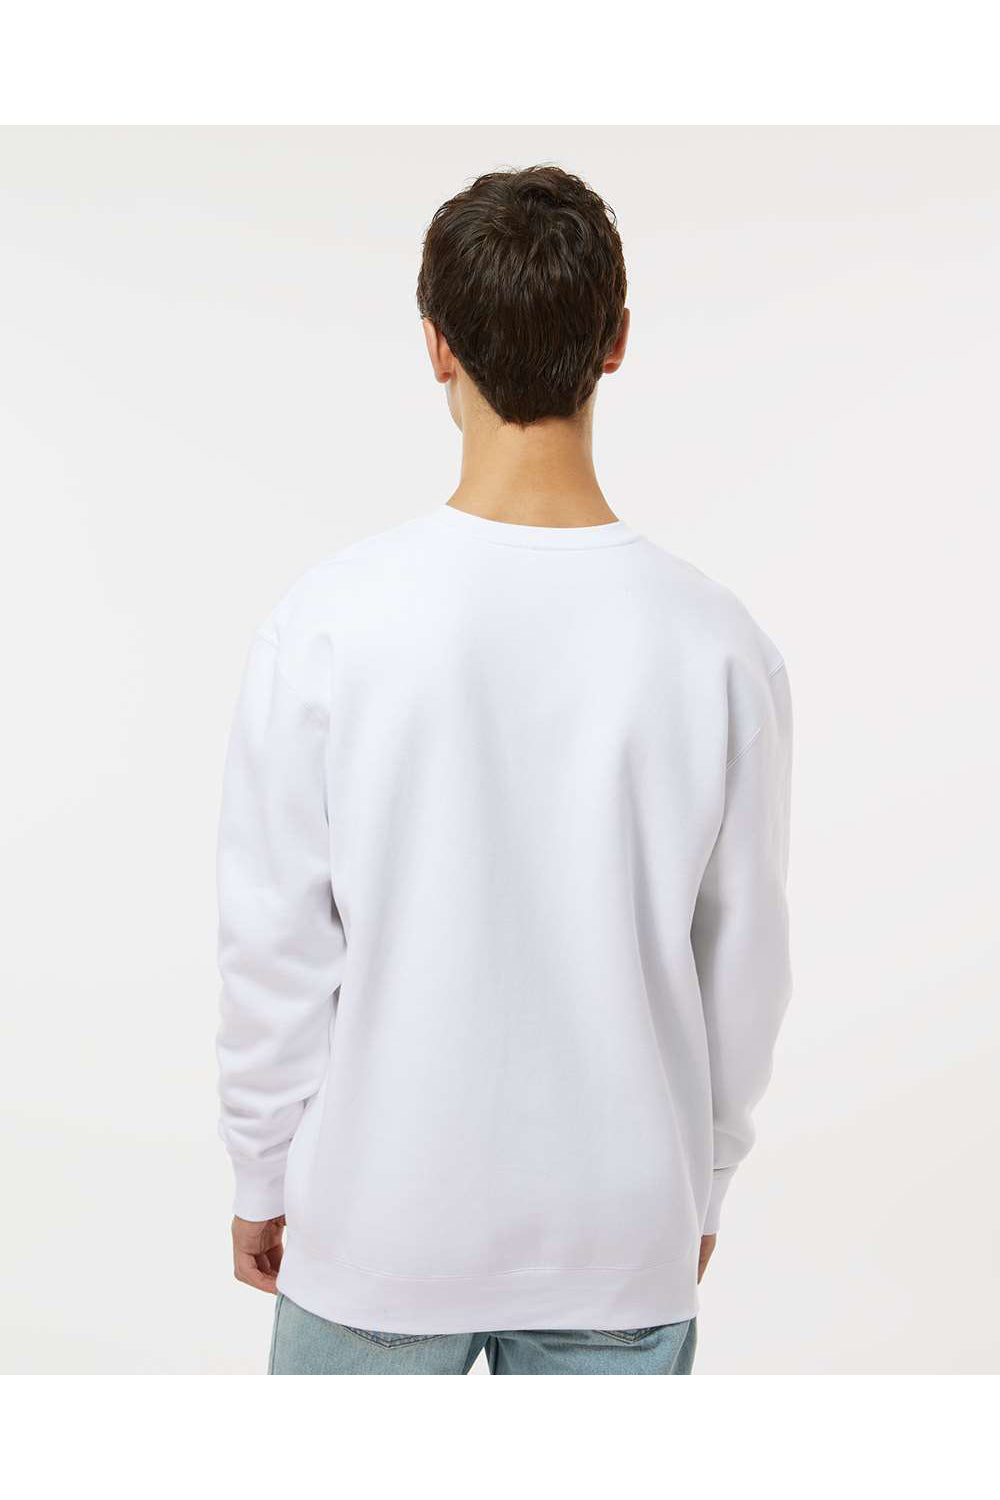 Independent Trading Co. IND3000 Mens Crewneck Sweatshirt White Model Back